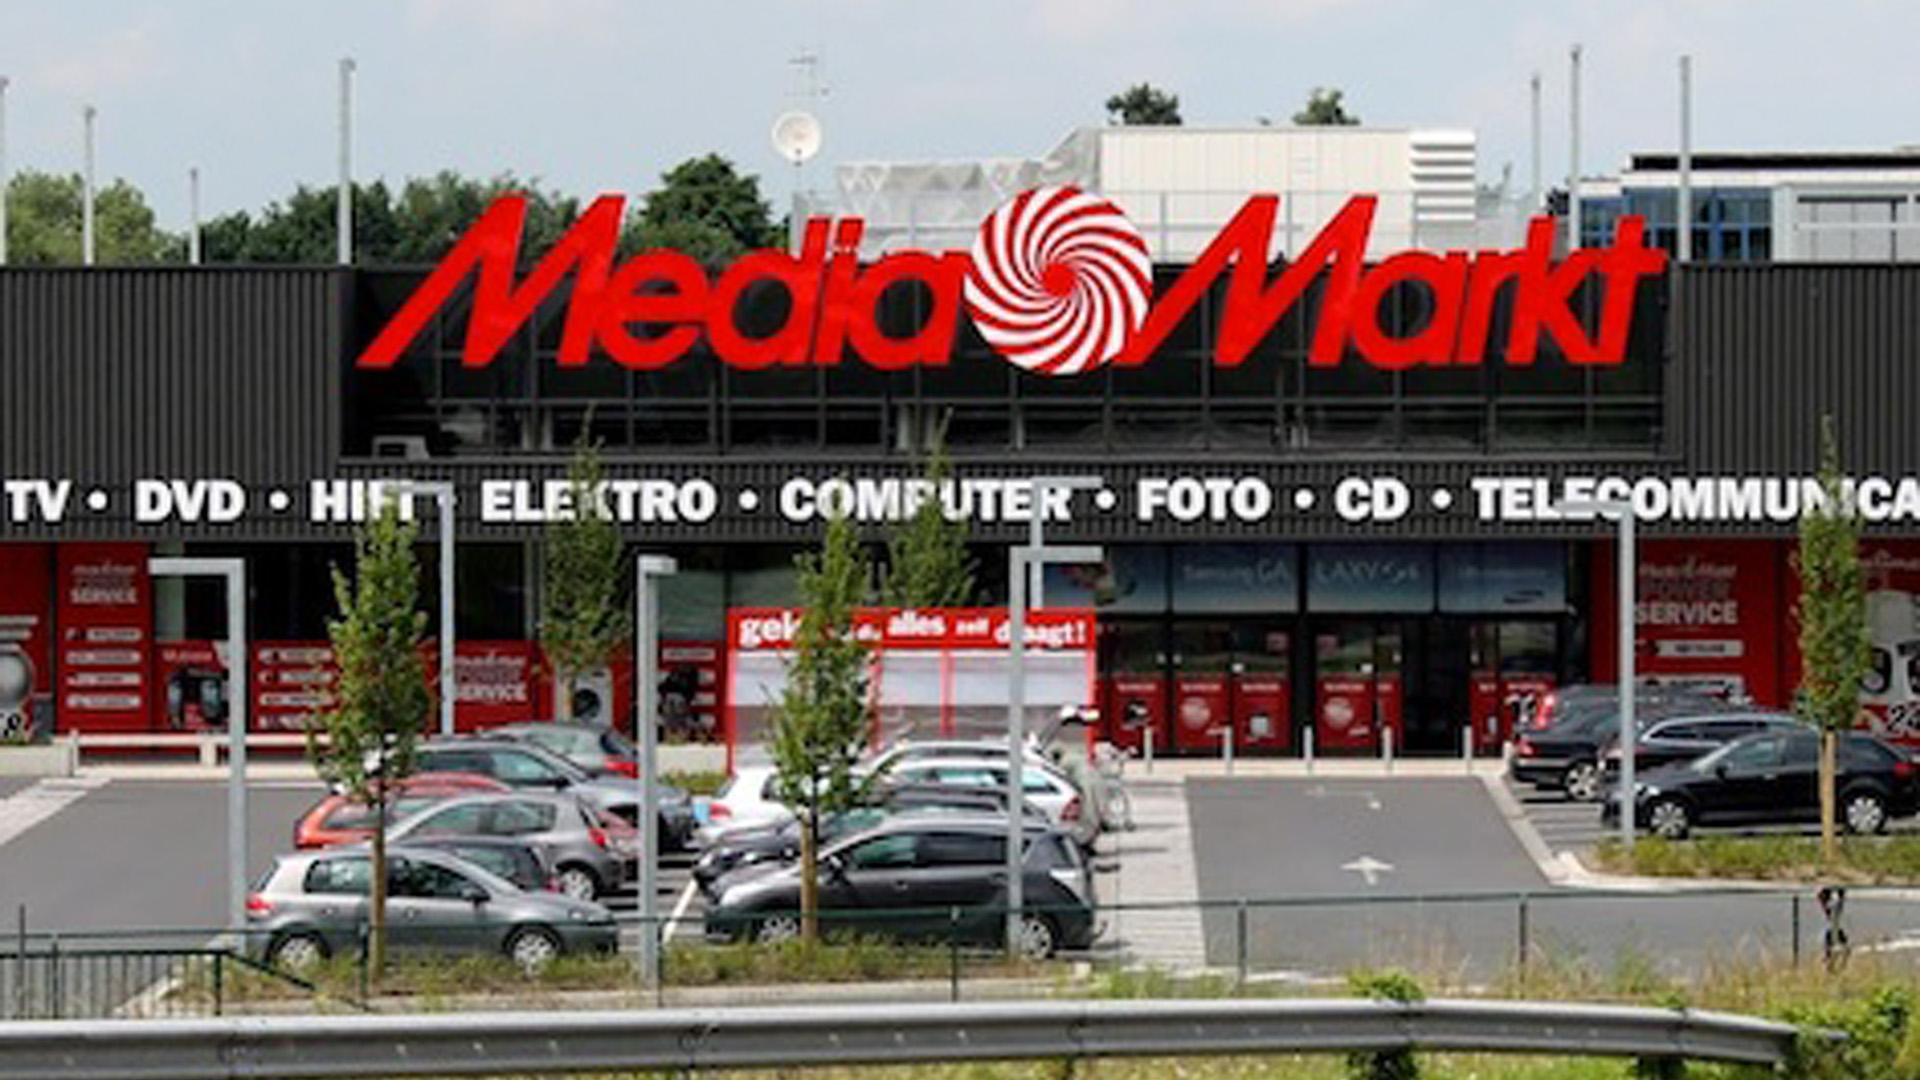 Media Markt Belgium